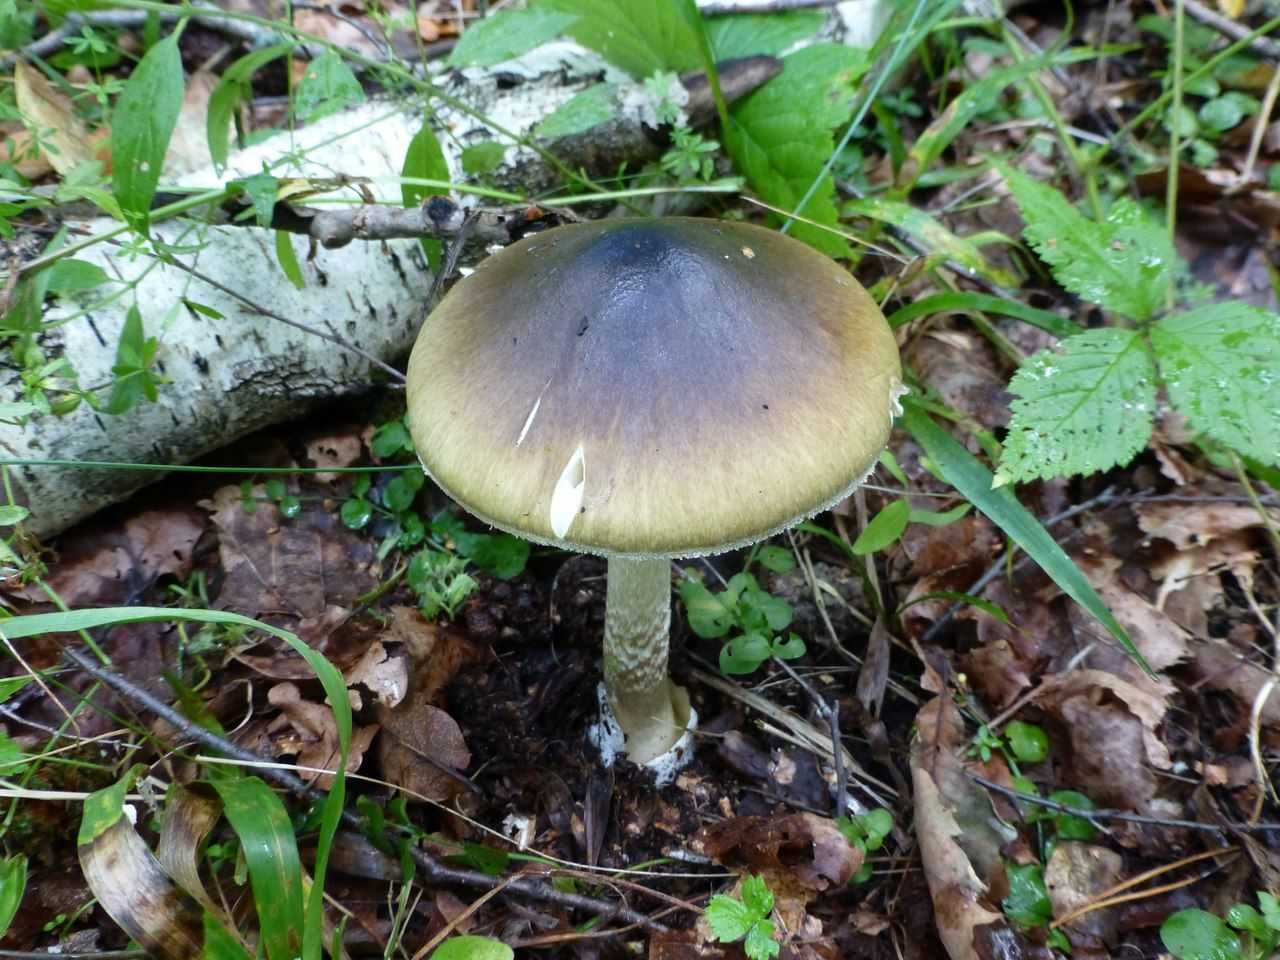 Осенние грибы — когда и какие пойдут, как отличить от опасных двойников. отдых. мтс/медиа